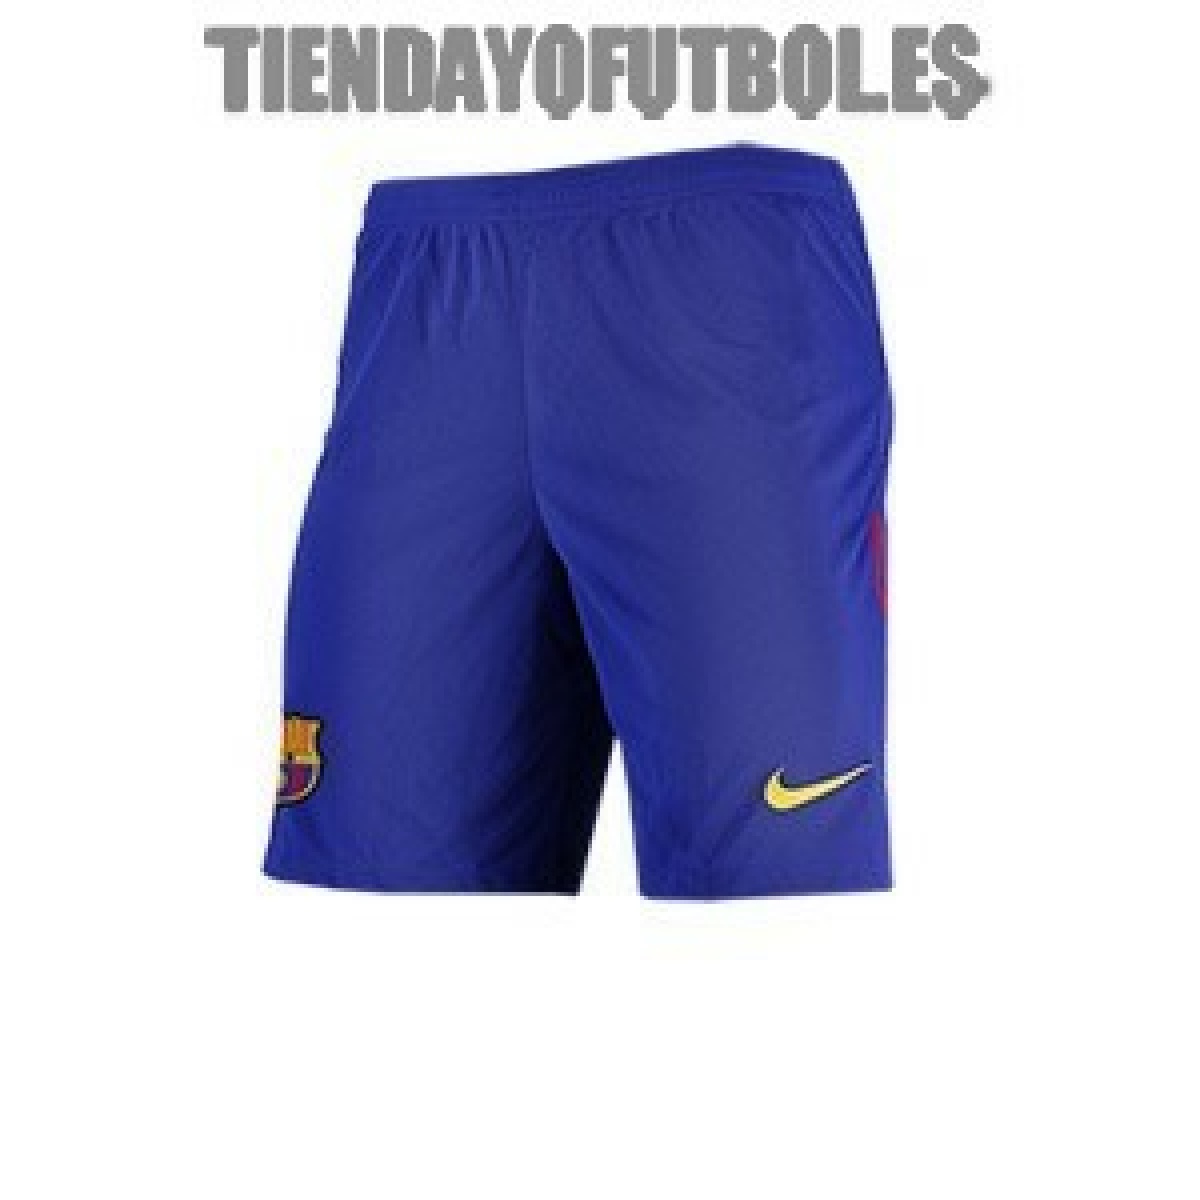 Pantalón oficial Azul FC Barcelona Nike.